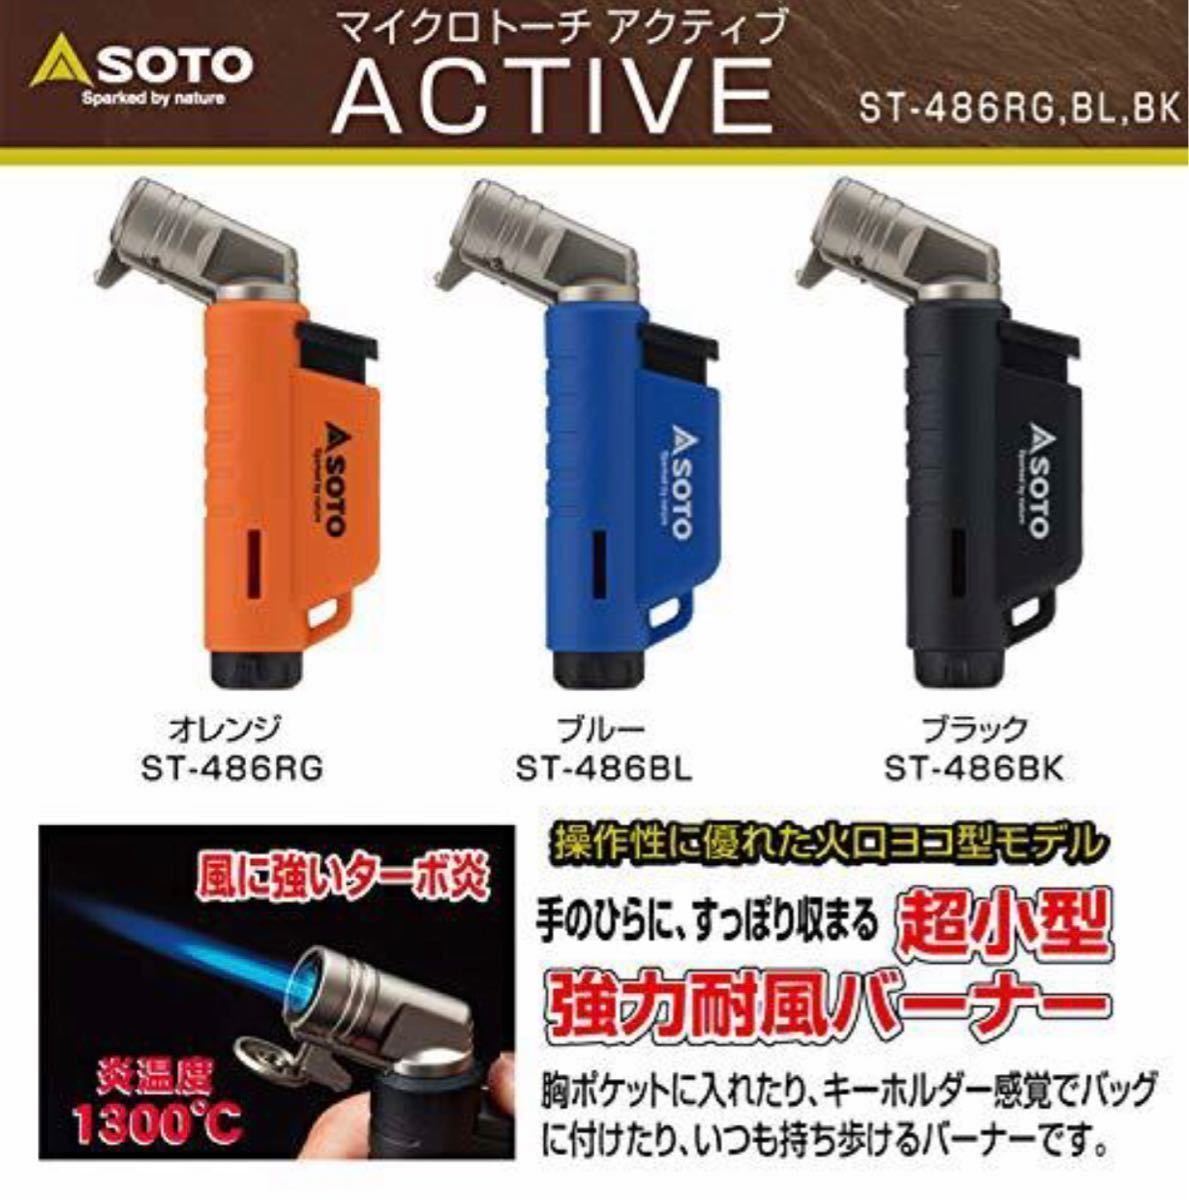 【送料無料】SOTO(ソト) マイクロトーチ アクティブ ST-486BK (ブラック) 新品 未開封